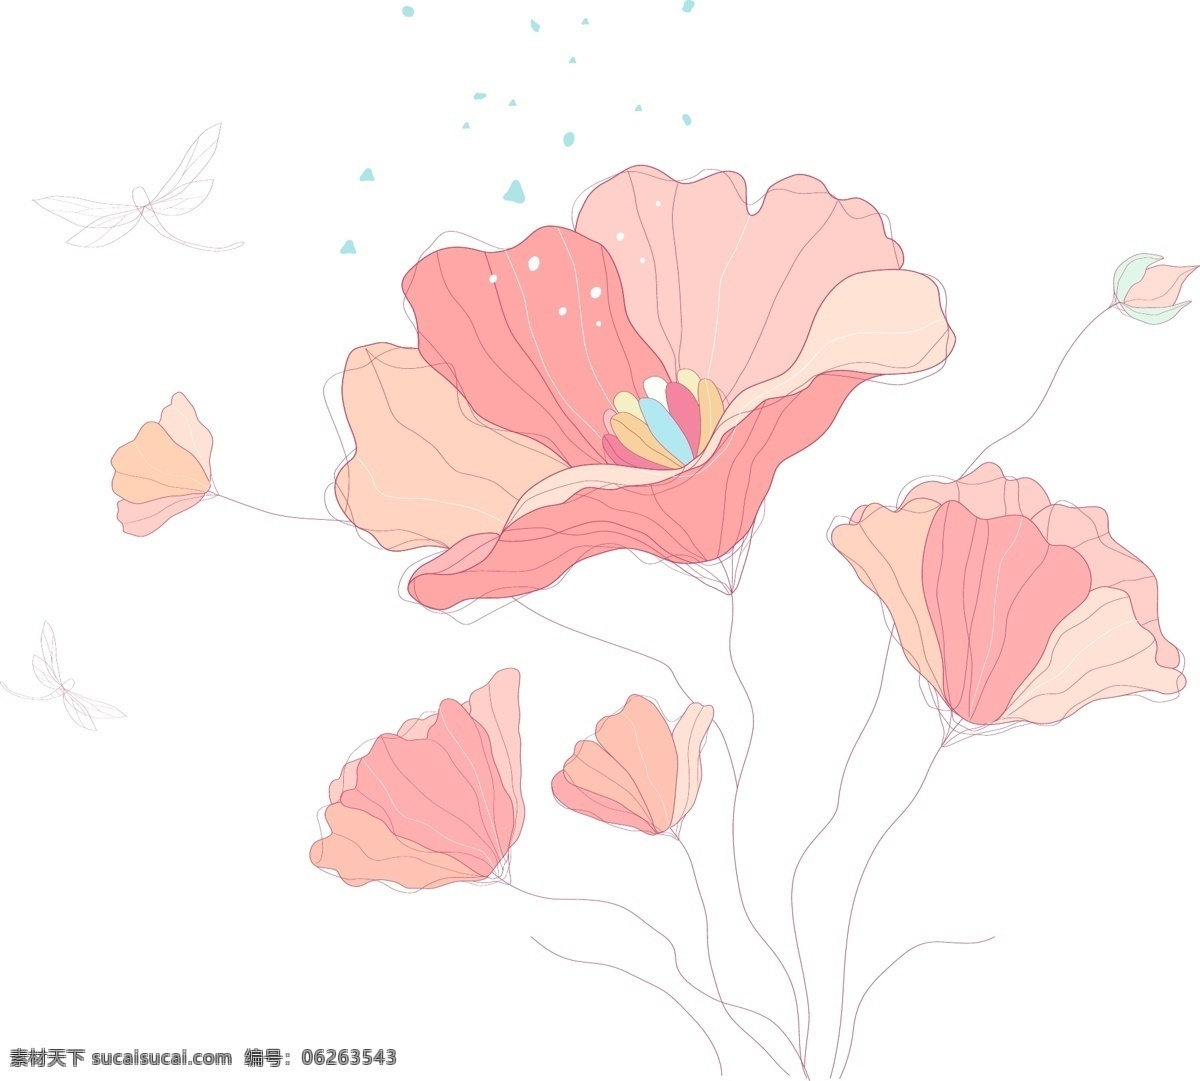 木兰花 花朵 花卉 手绘 素描 唯美 矢量图 花纹花边